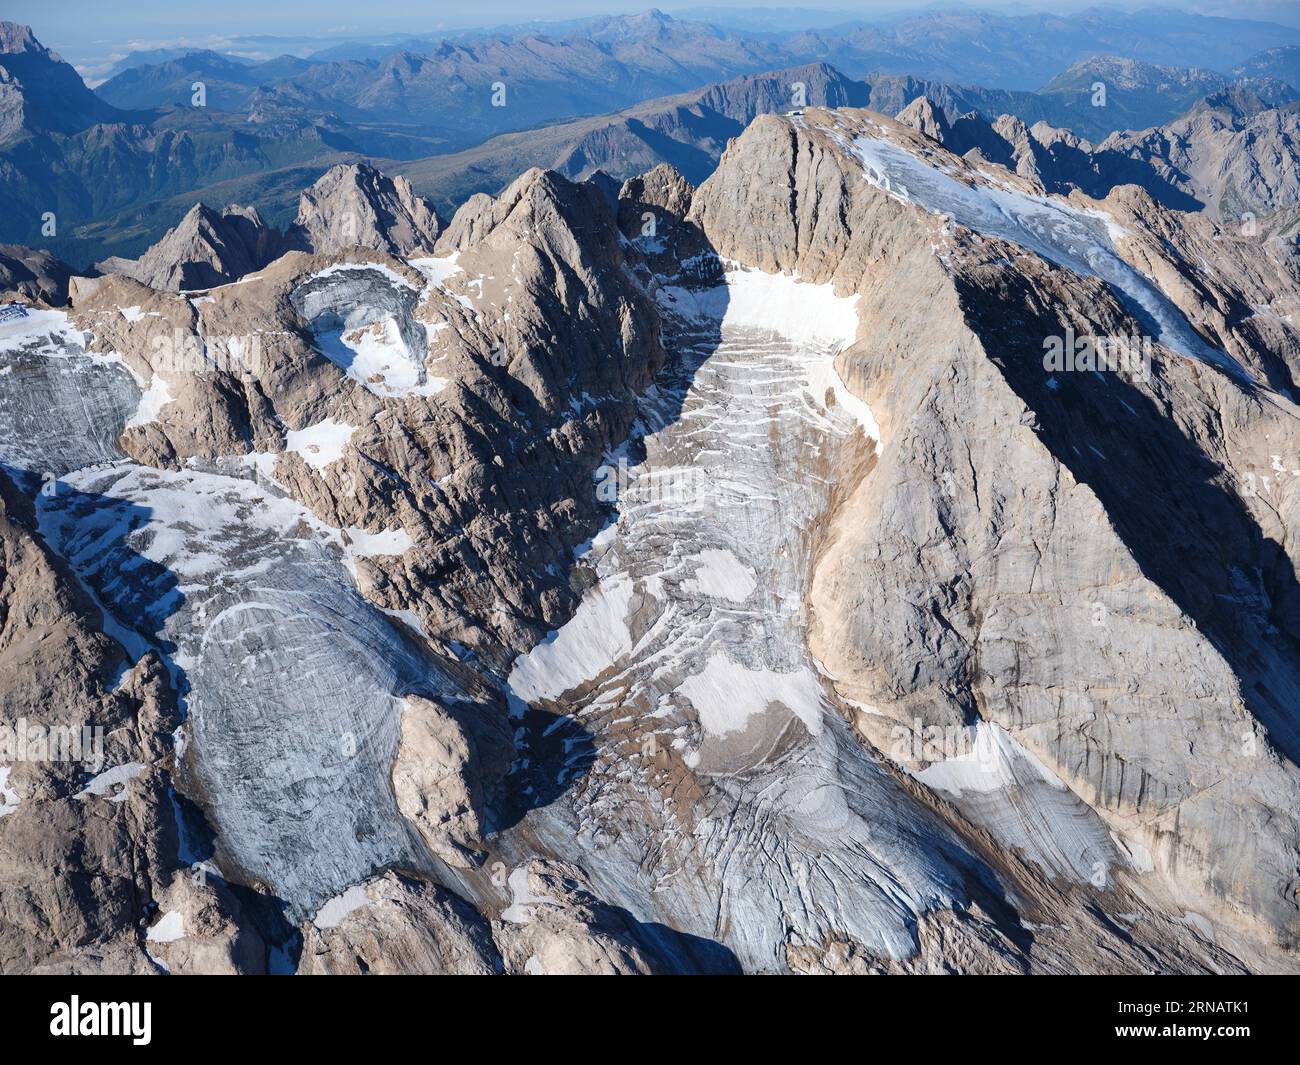 VISTA AEREA. Lato nord della Marmolada (3343 m) e unico ghiacciaio delle Dolomiti. Trentino-alto Adige (il versante meridionale è in Veneto), Italia. Foto Stock